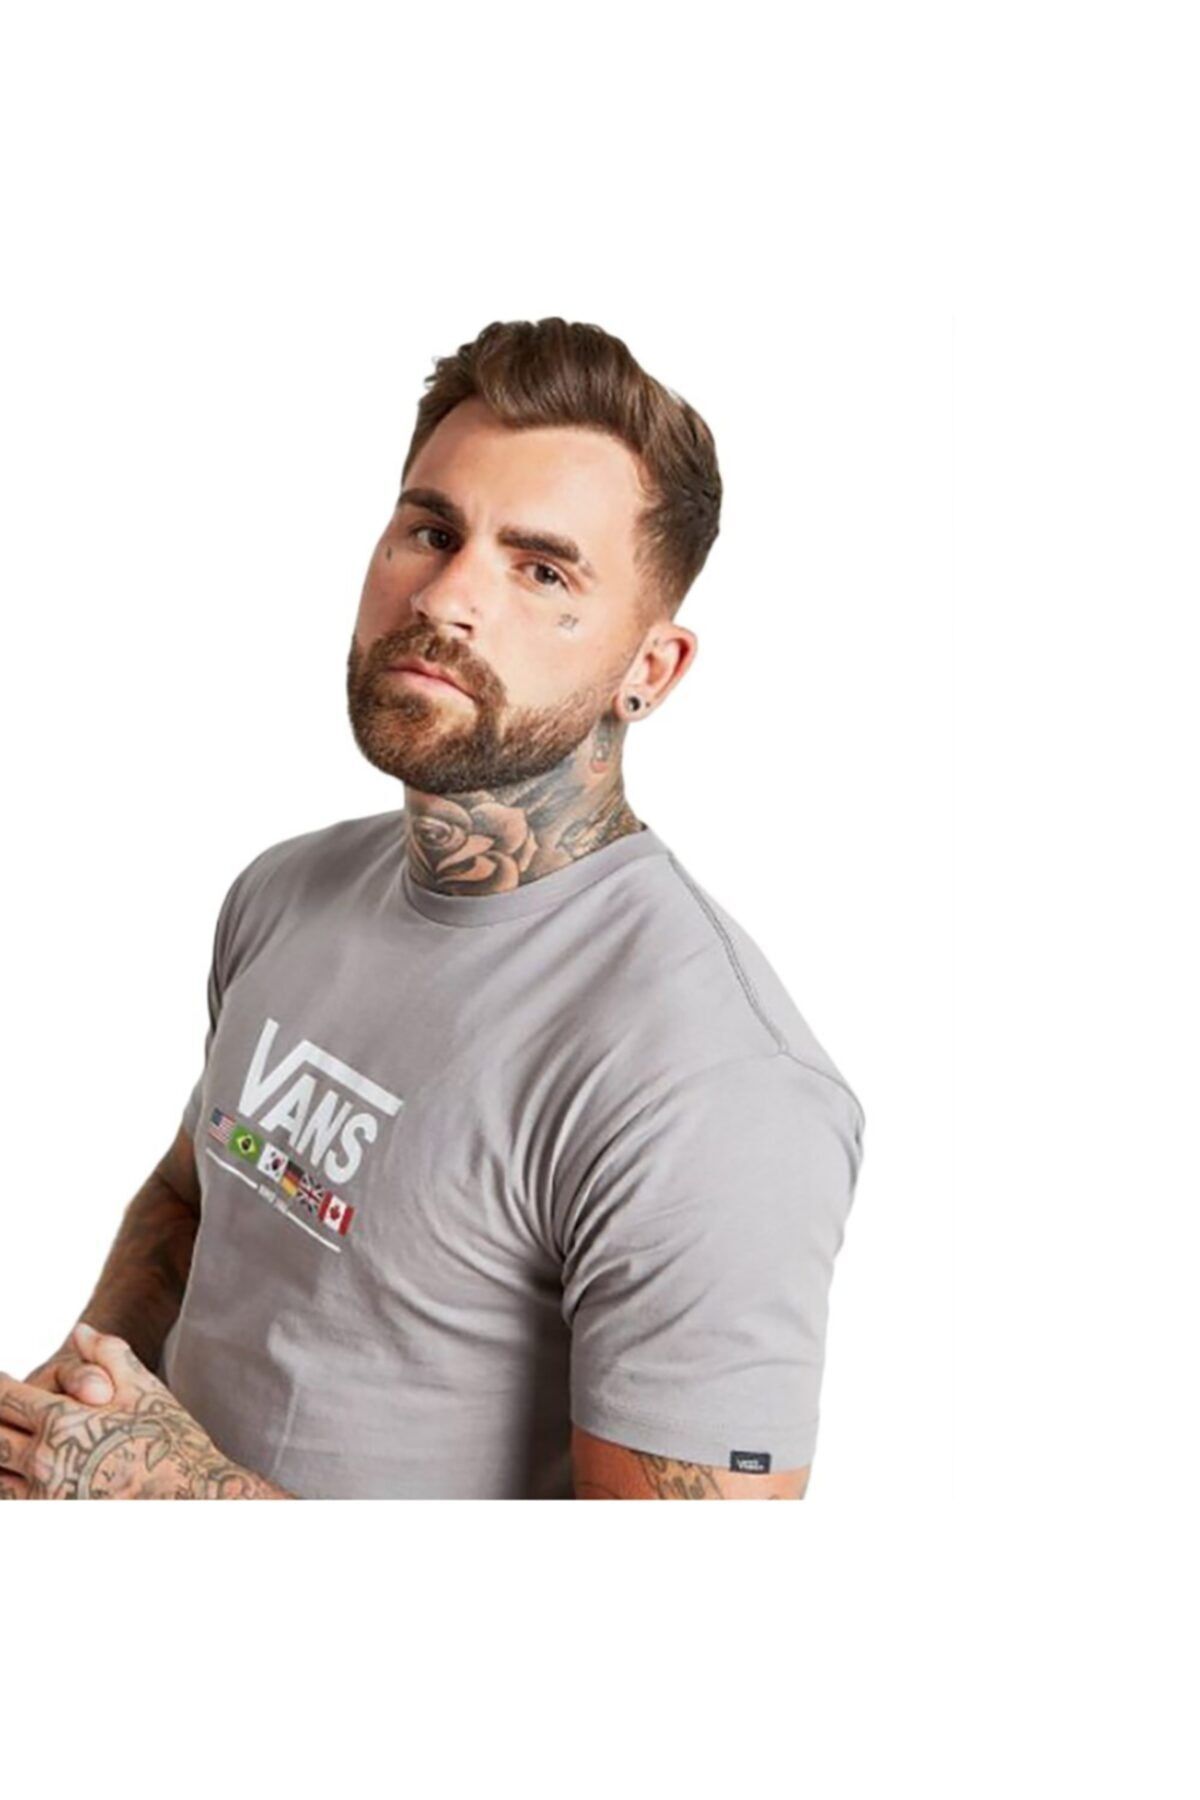 تی شرت طوسی یقه خدمه طرح چاپی گرافیکی مدل ساده آستین کوتاه مردانه ونس Vans (برند آمریکا)